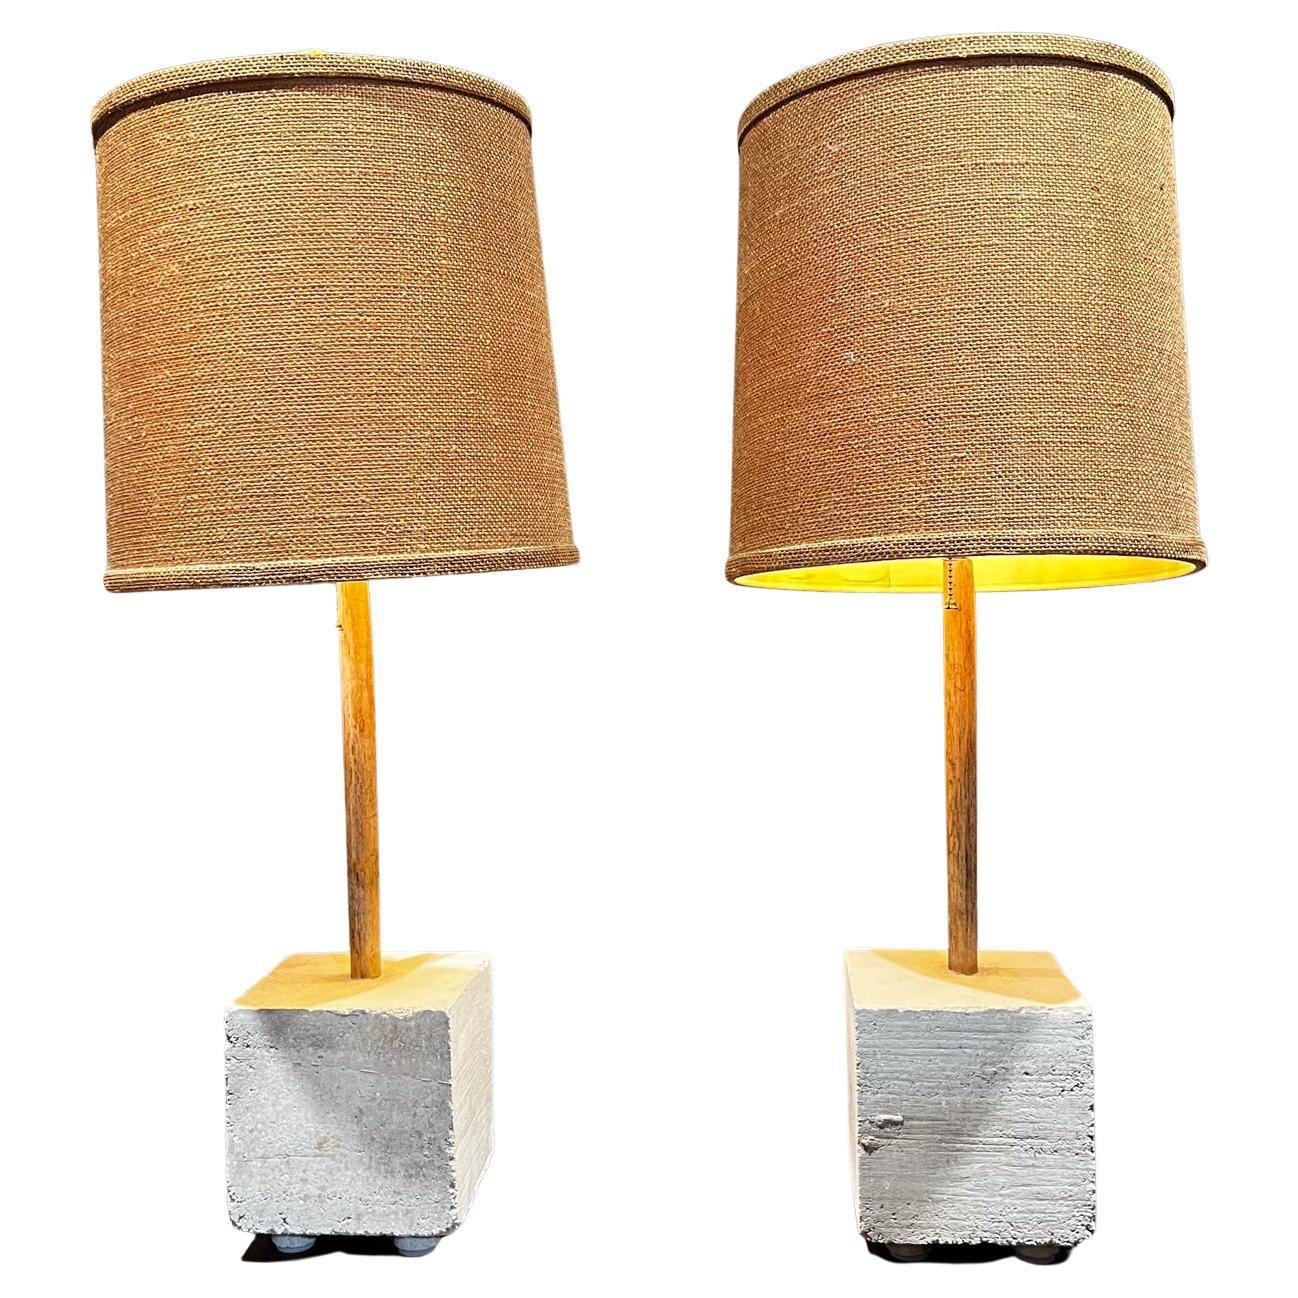 Zeitgenössische würfelförmige tischlampen aus stampflehm und bambus von Pablo Romo
Quadratische Lampe aus Stampflehm mit Bambus
6 x 6 x 20,25 hoch
Original Vintage By Zustand. Es sind keine Schirme enthalten.
Überprüfen Sie alle Bilder.